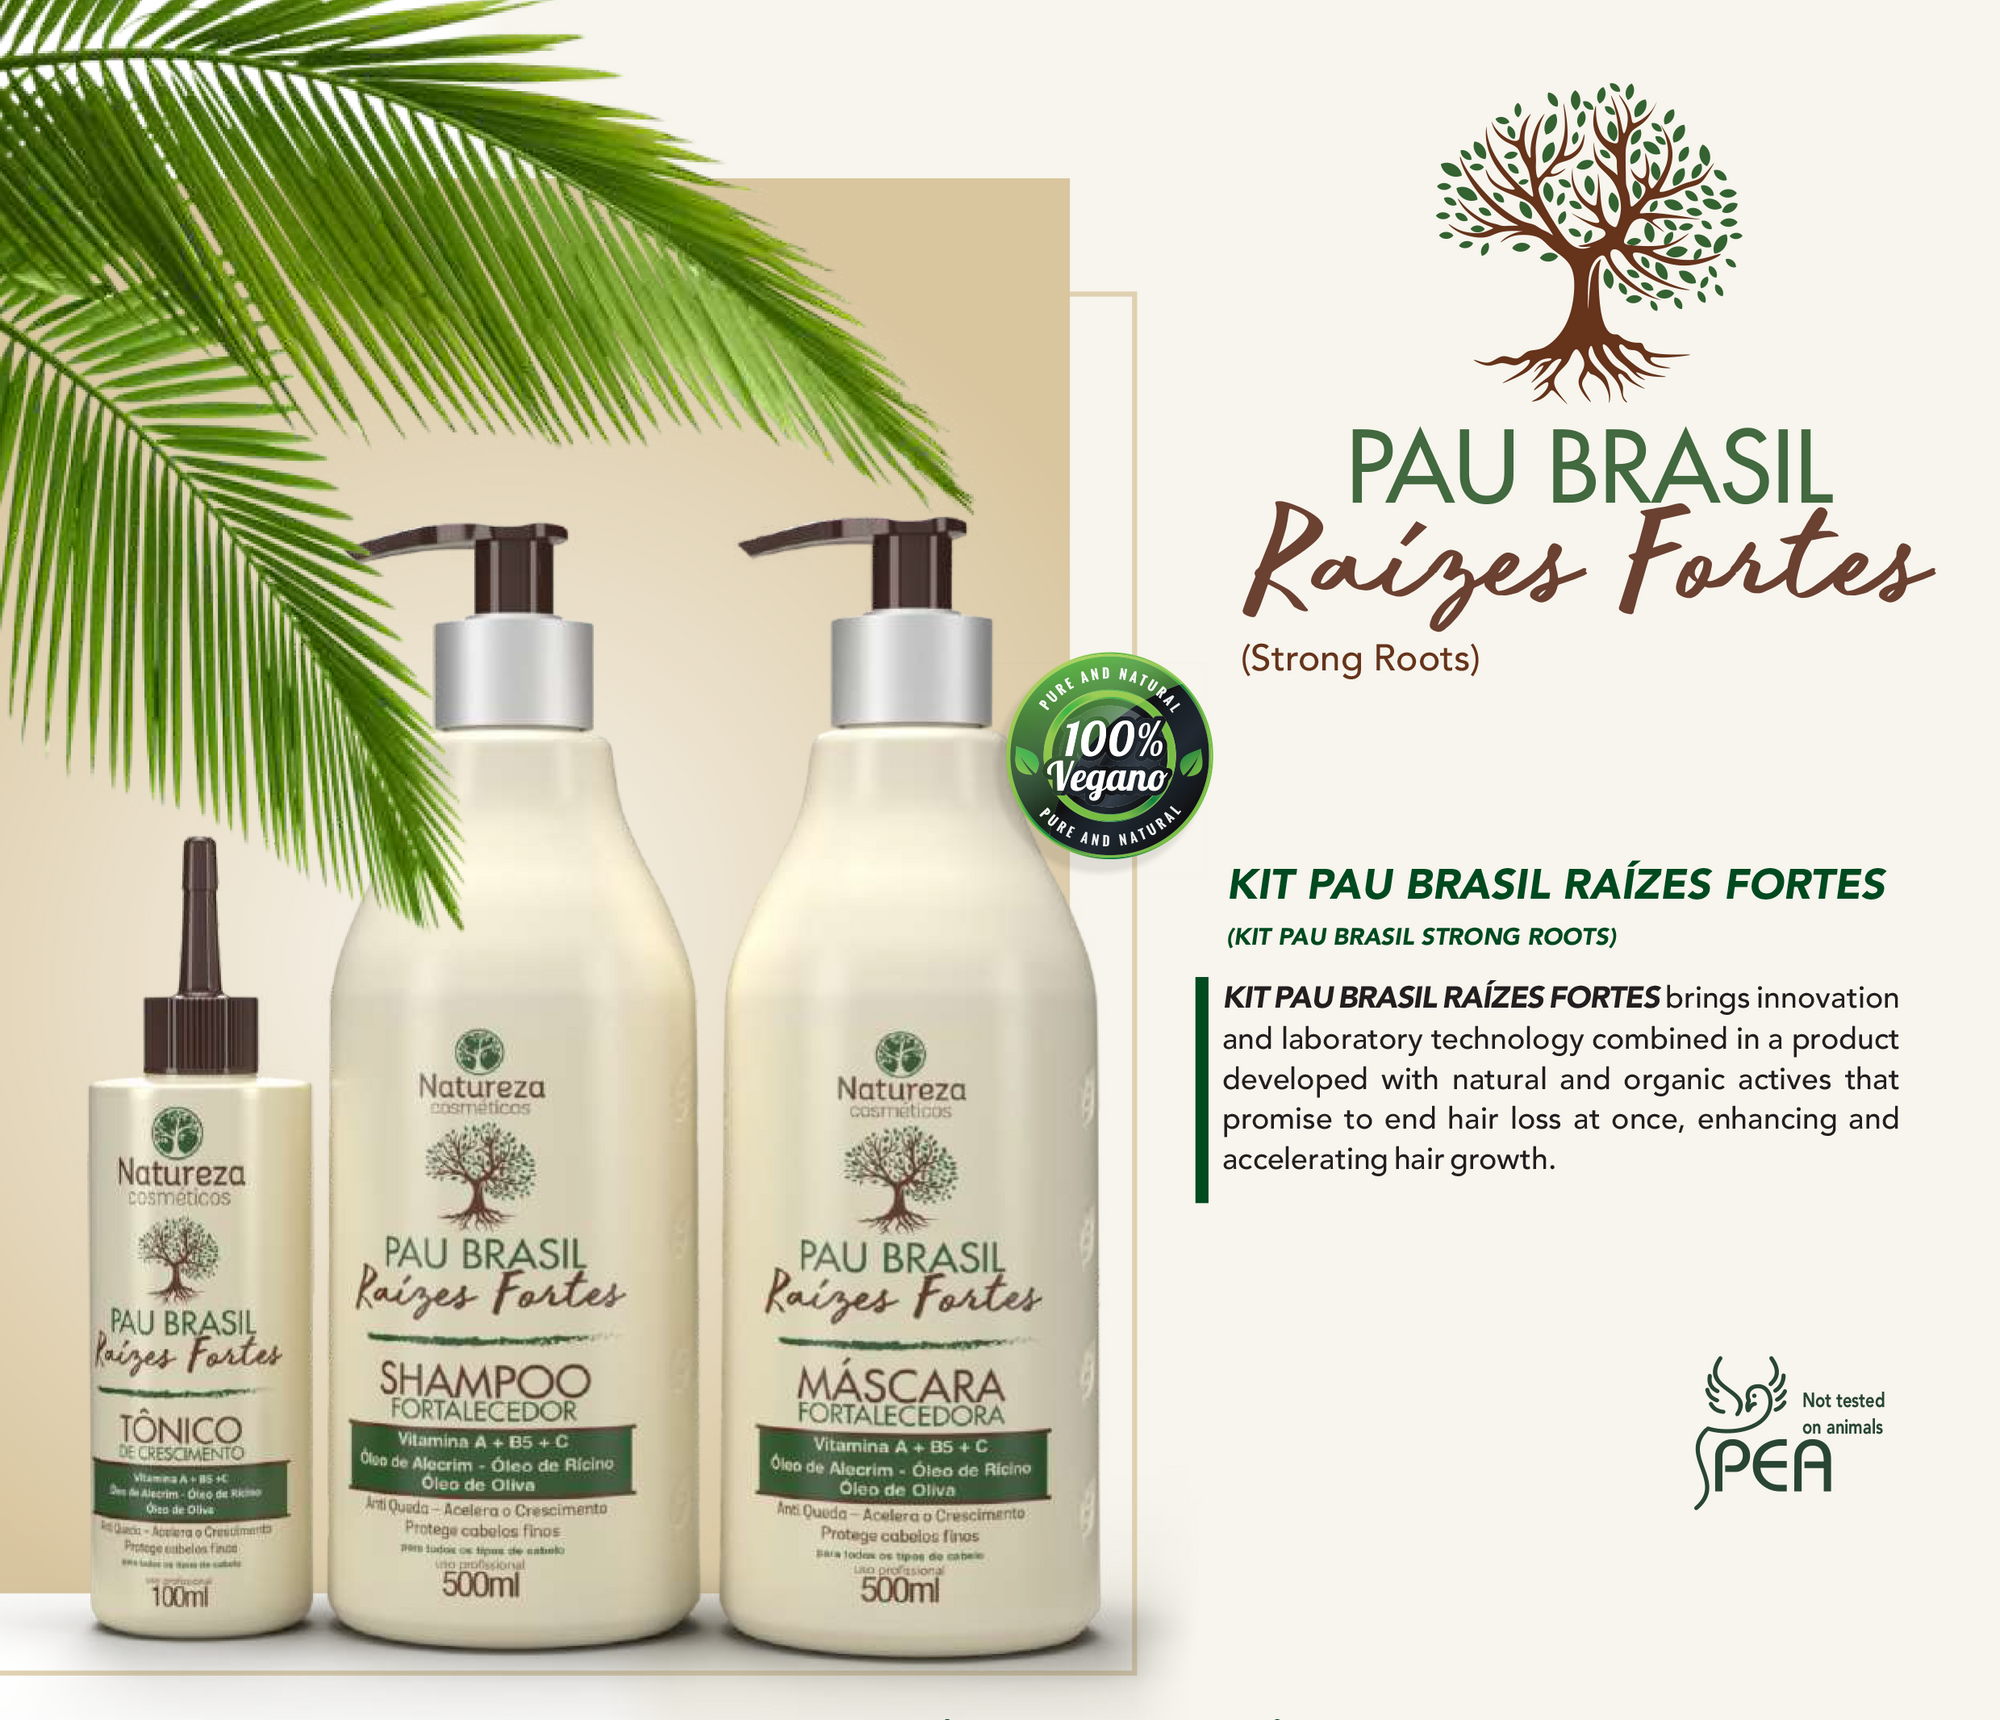 Pau Brasil Growth Tonic (Natureza Cosmeticos Pau Brasil Raizes Fortes 100ml)